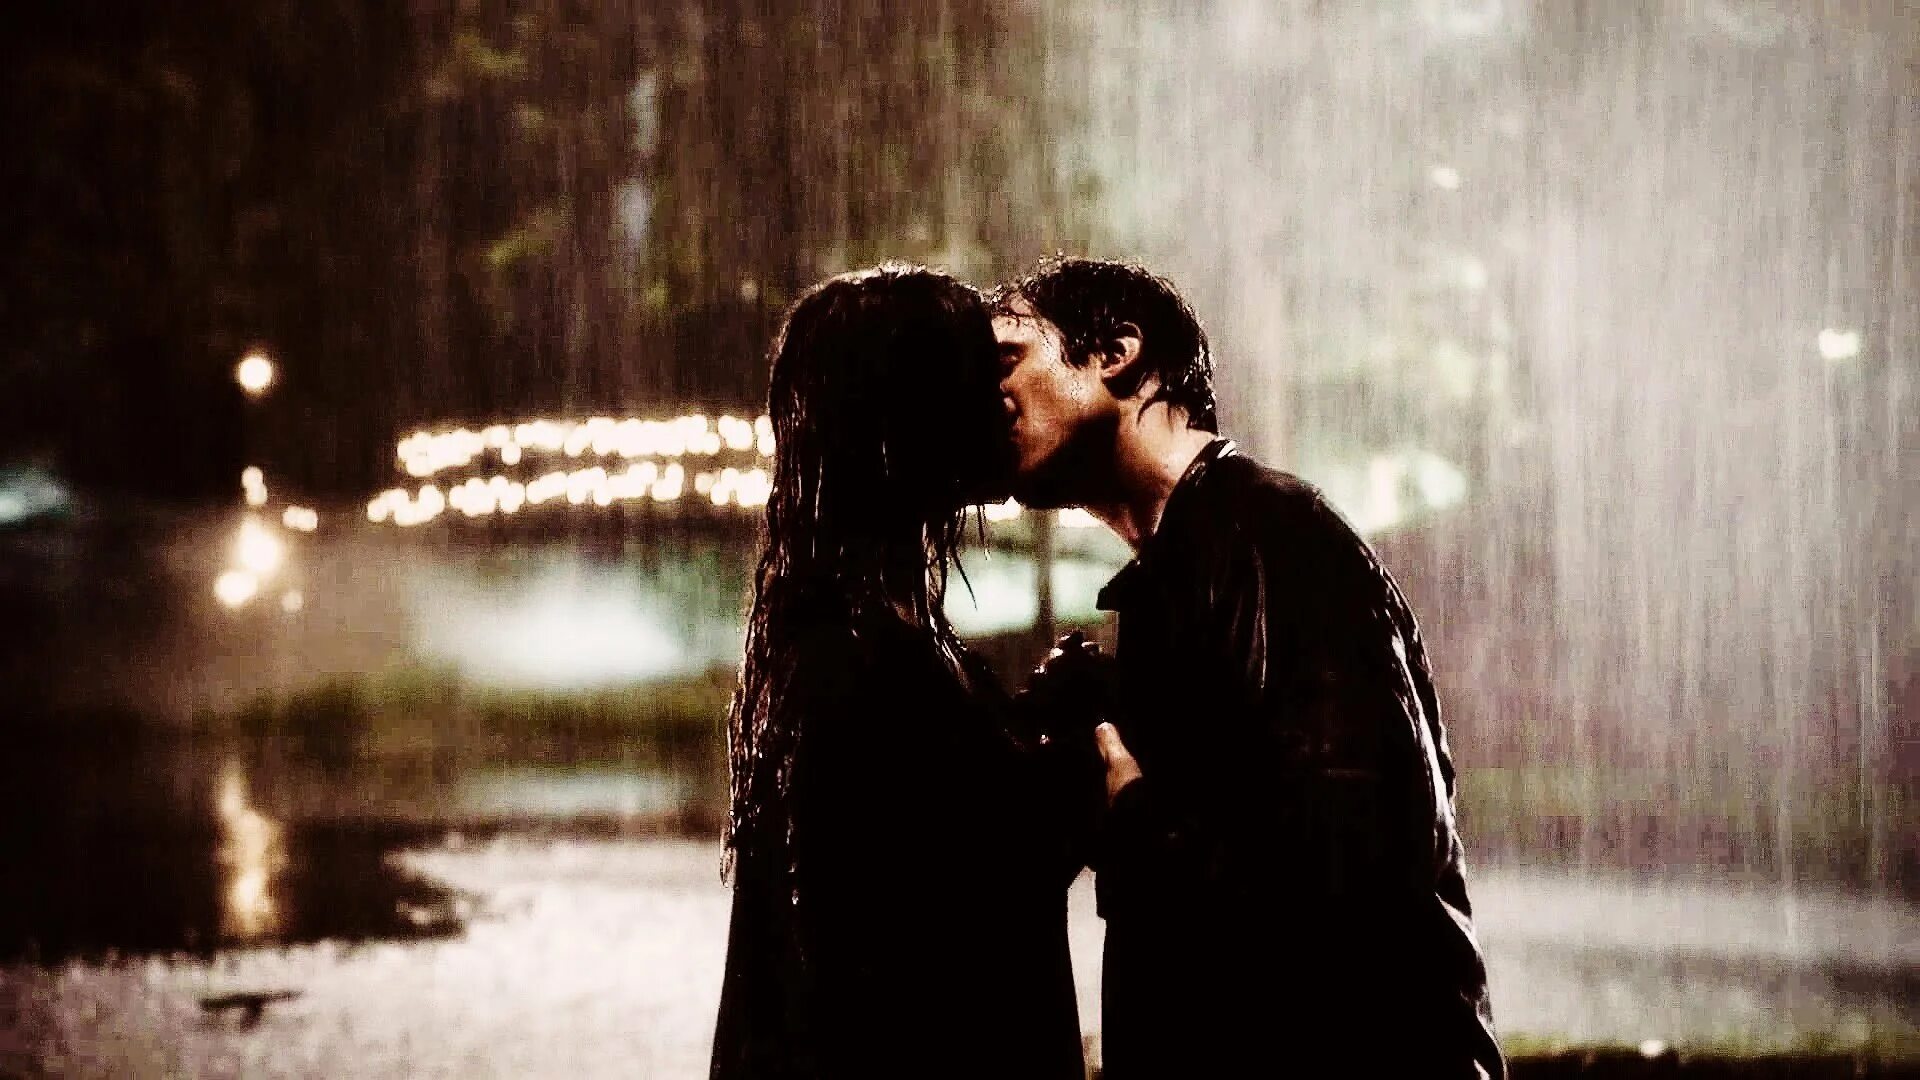 Damon elena. Дневники вампира поцелуй Деймона и Елены под дождем.